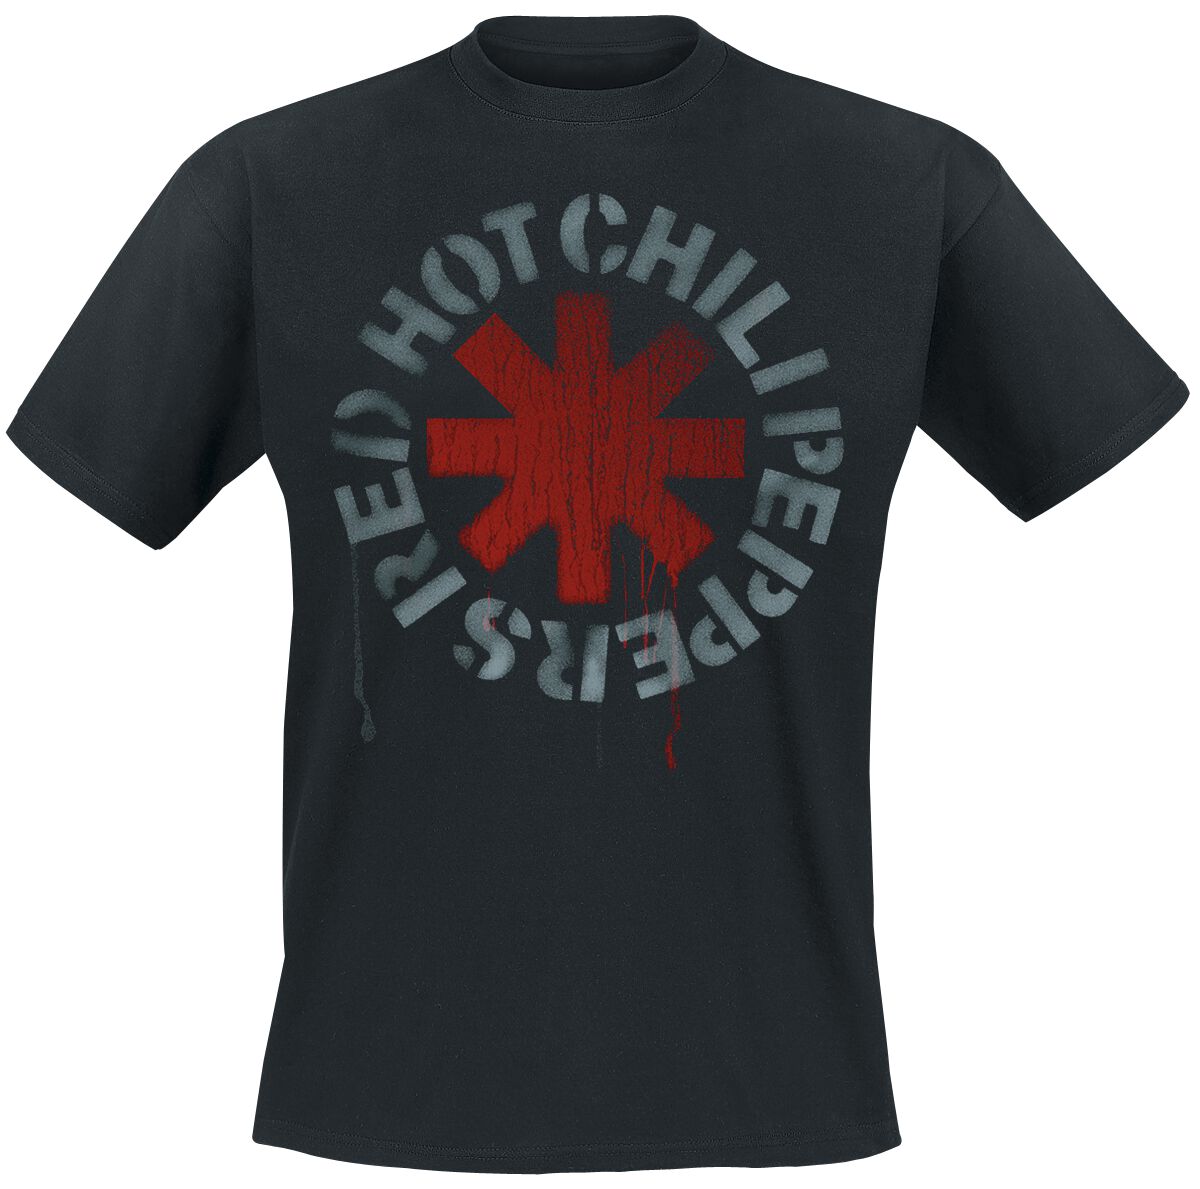 Red Hot Chili Peppers T-Shirt - Stencil Black - S bis 5XL - für Männer - Größe 3XL - schwarz  - Lizenziertes Merchandise!